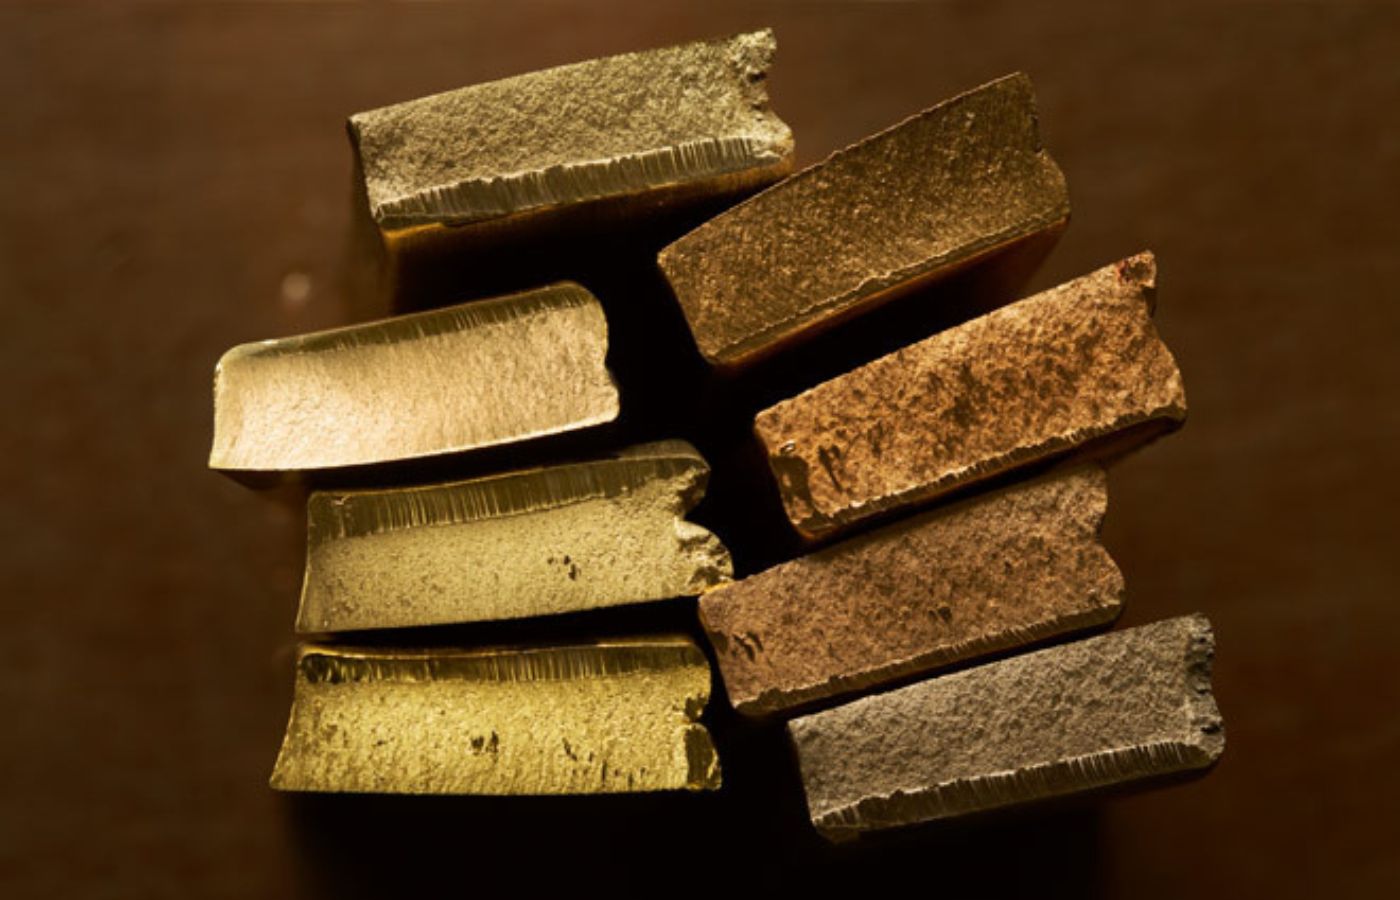 Characteristics of different precious metals